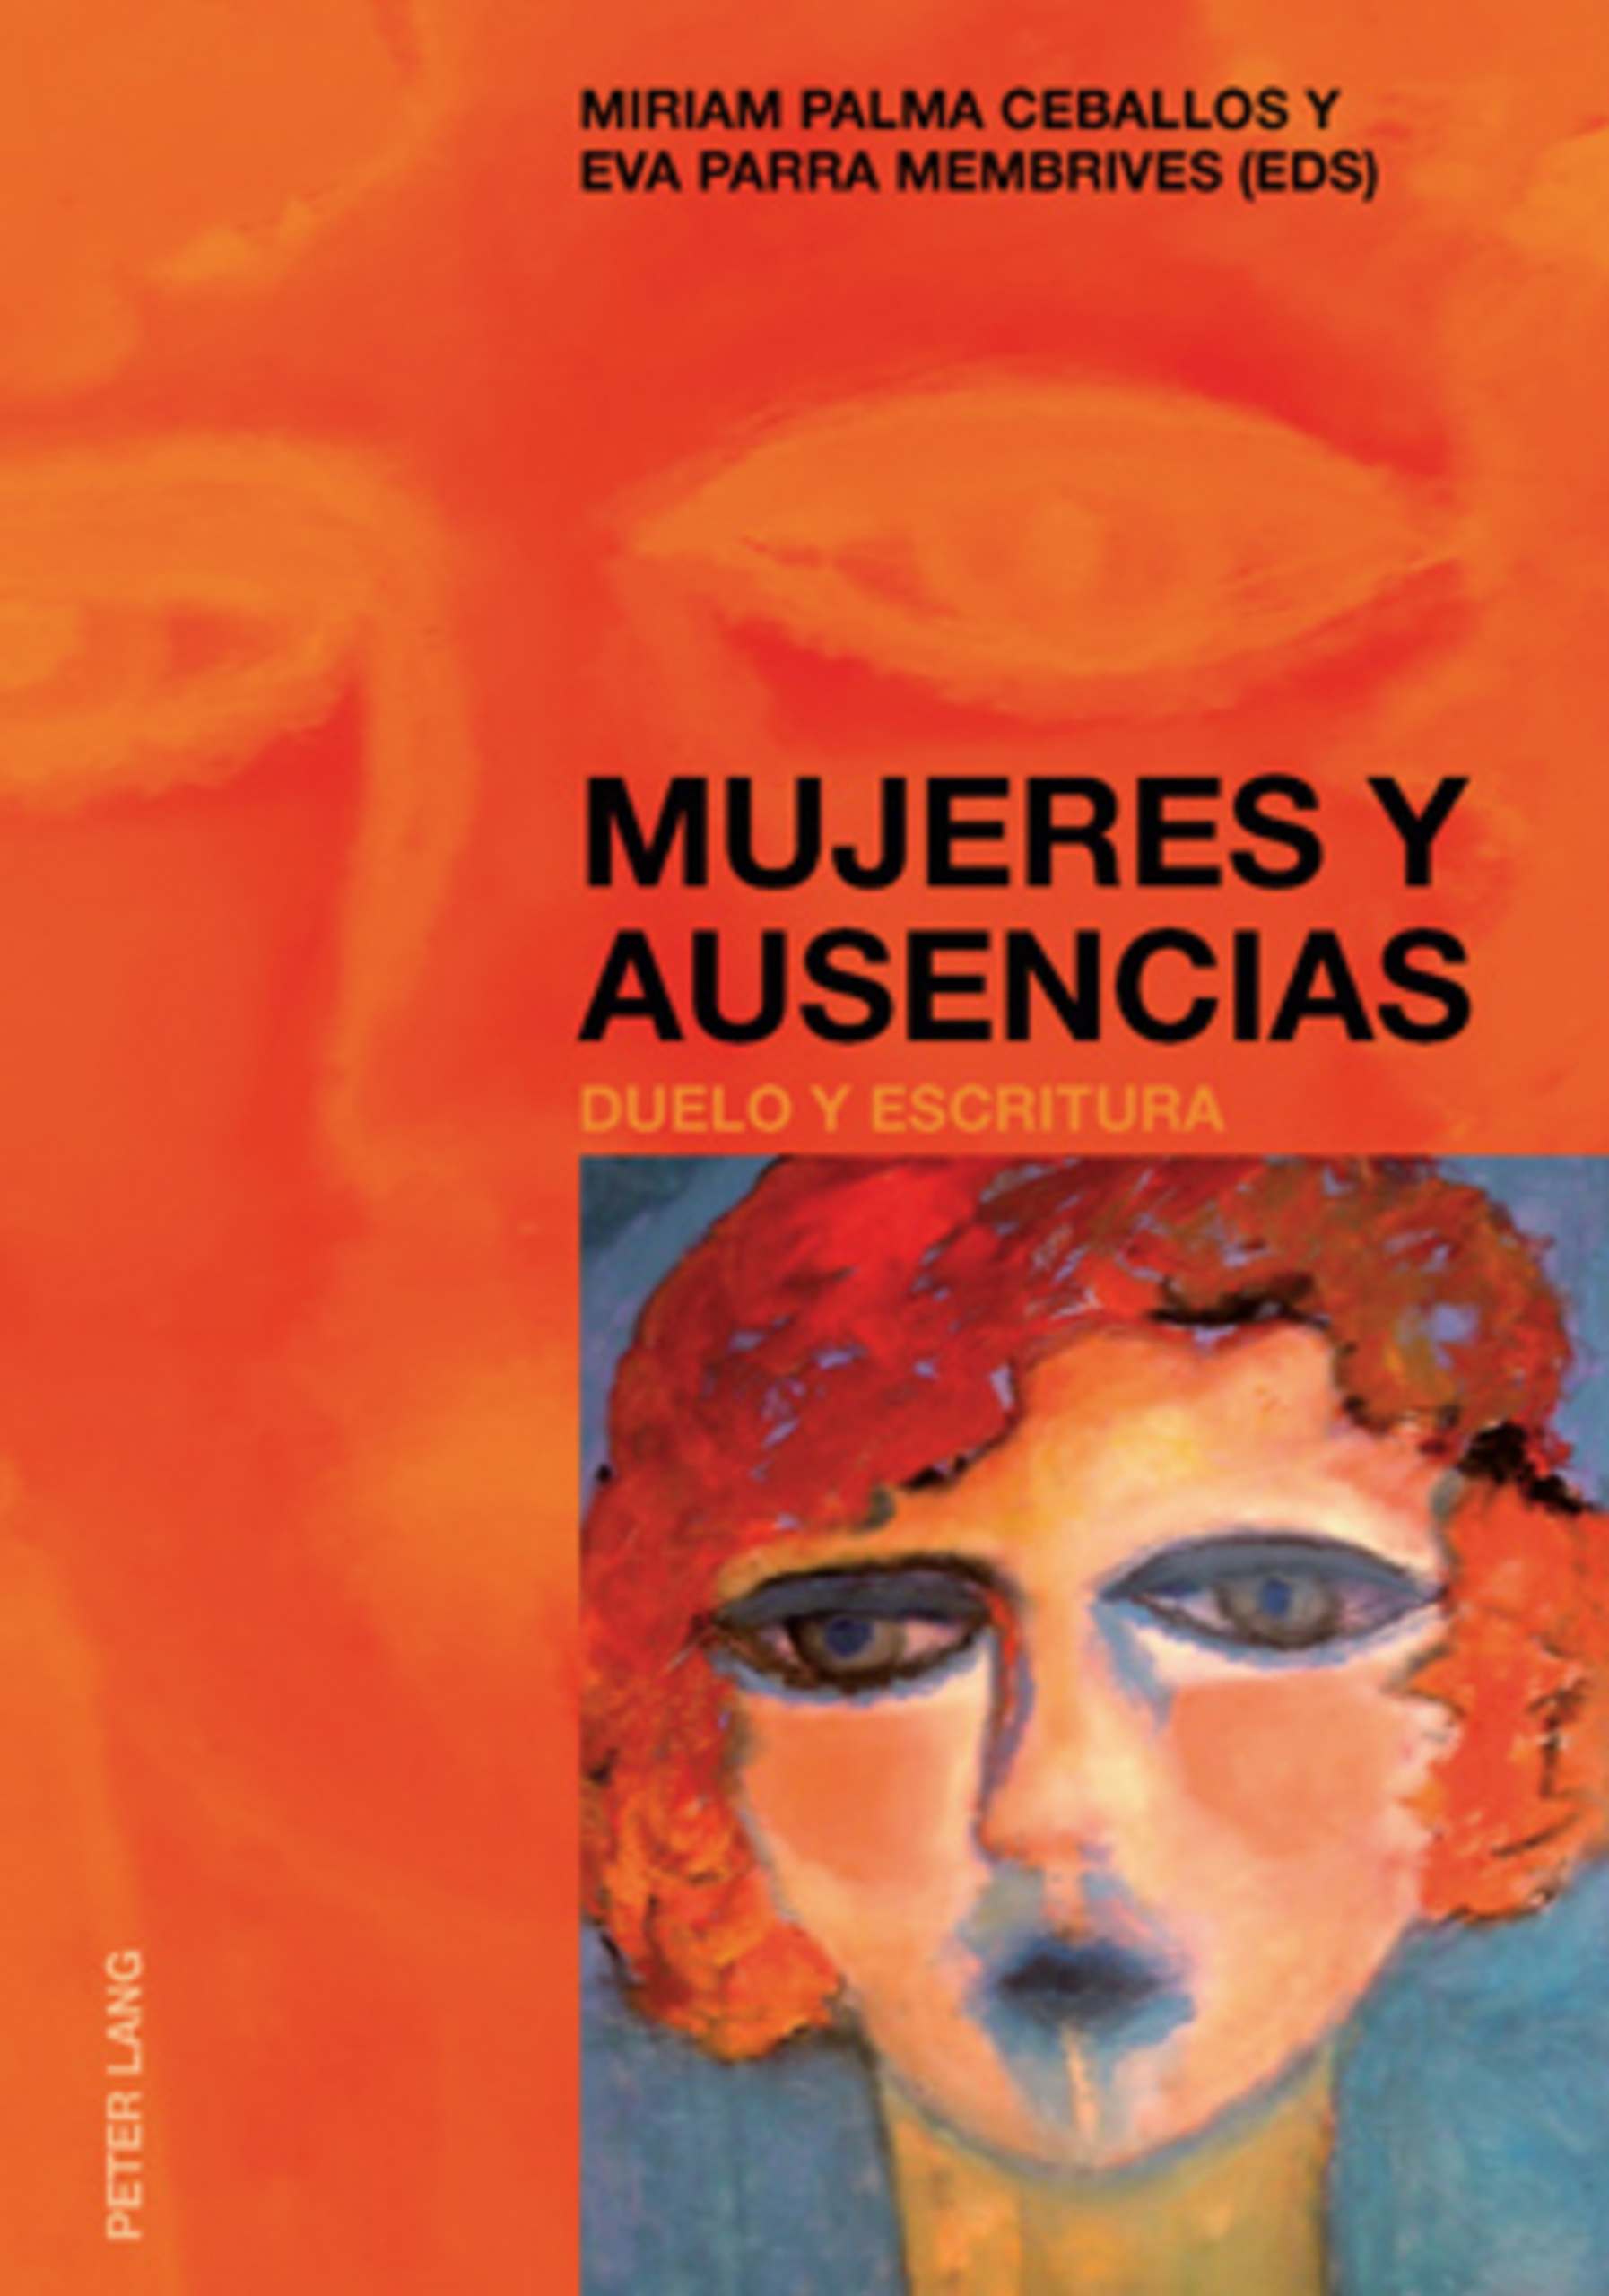 Imagen de portada del libro Mujeres y ausencias